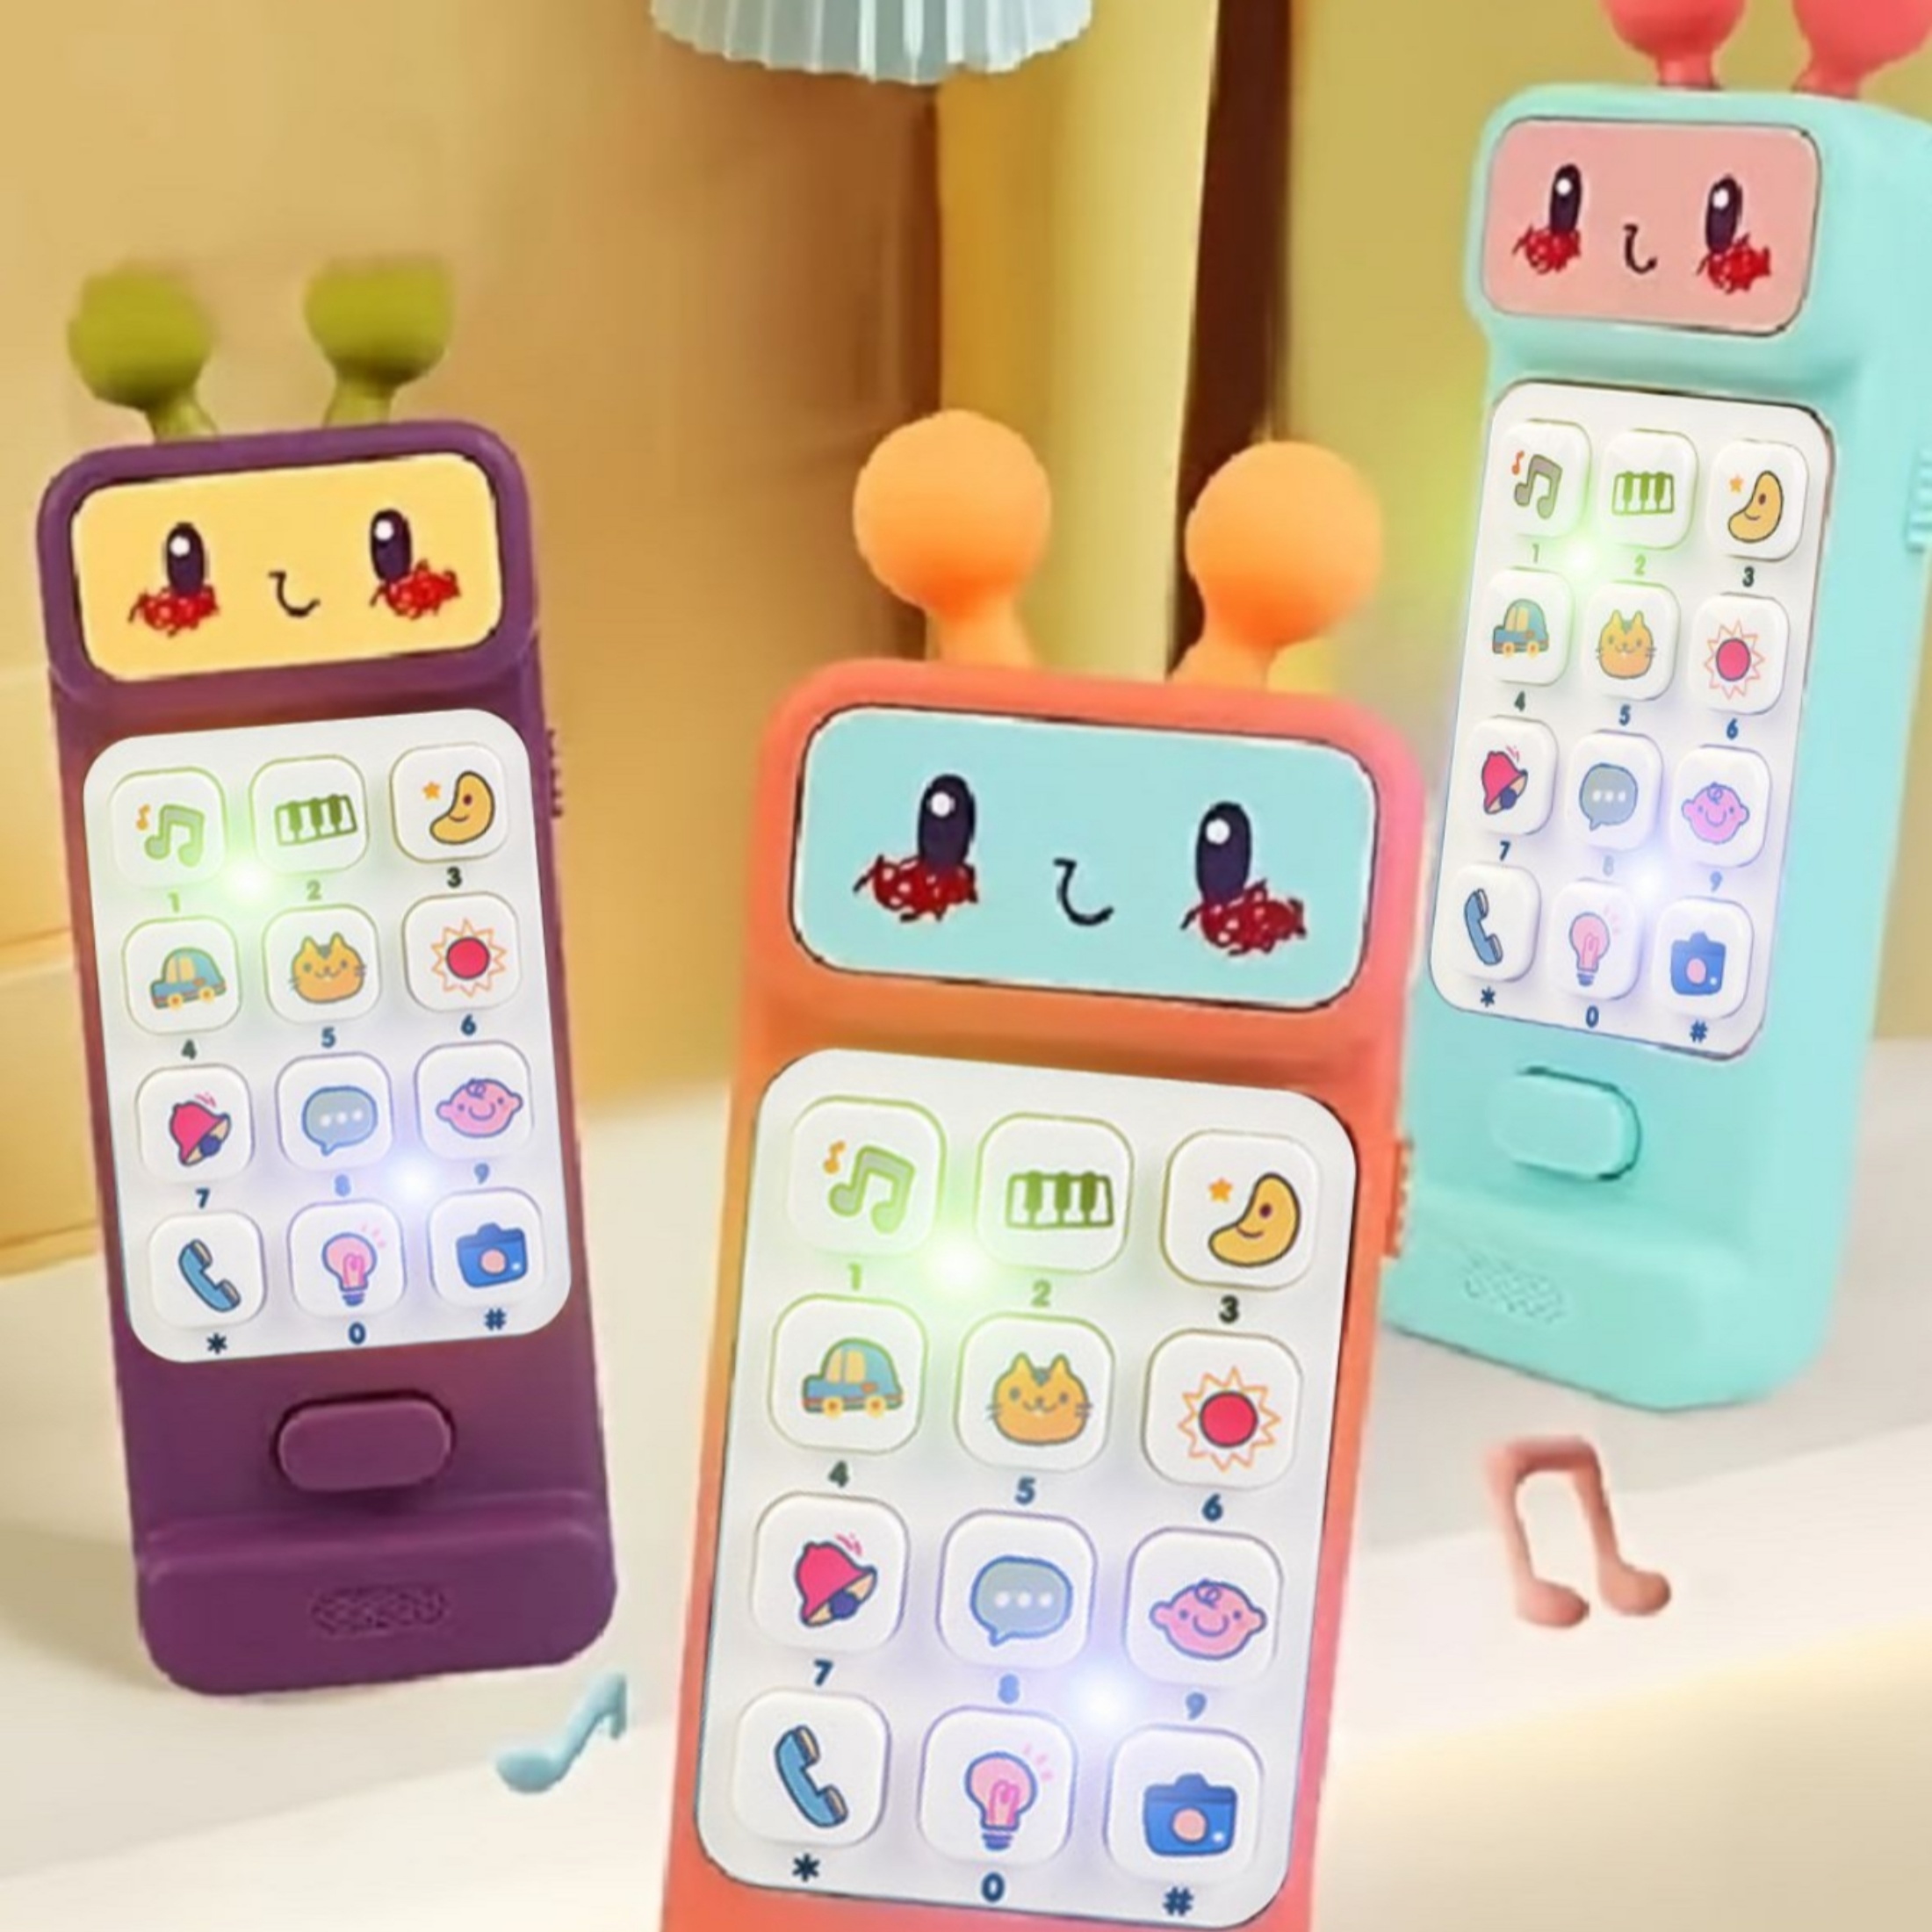 Jouet de téléphone portable pour enfants Jouets musicaux pour bébé